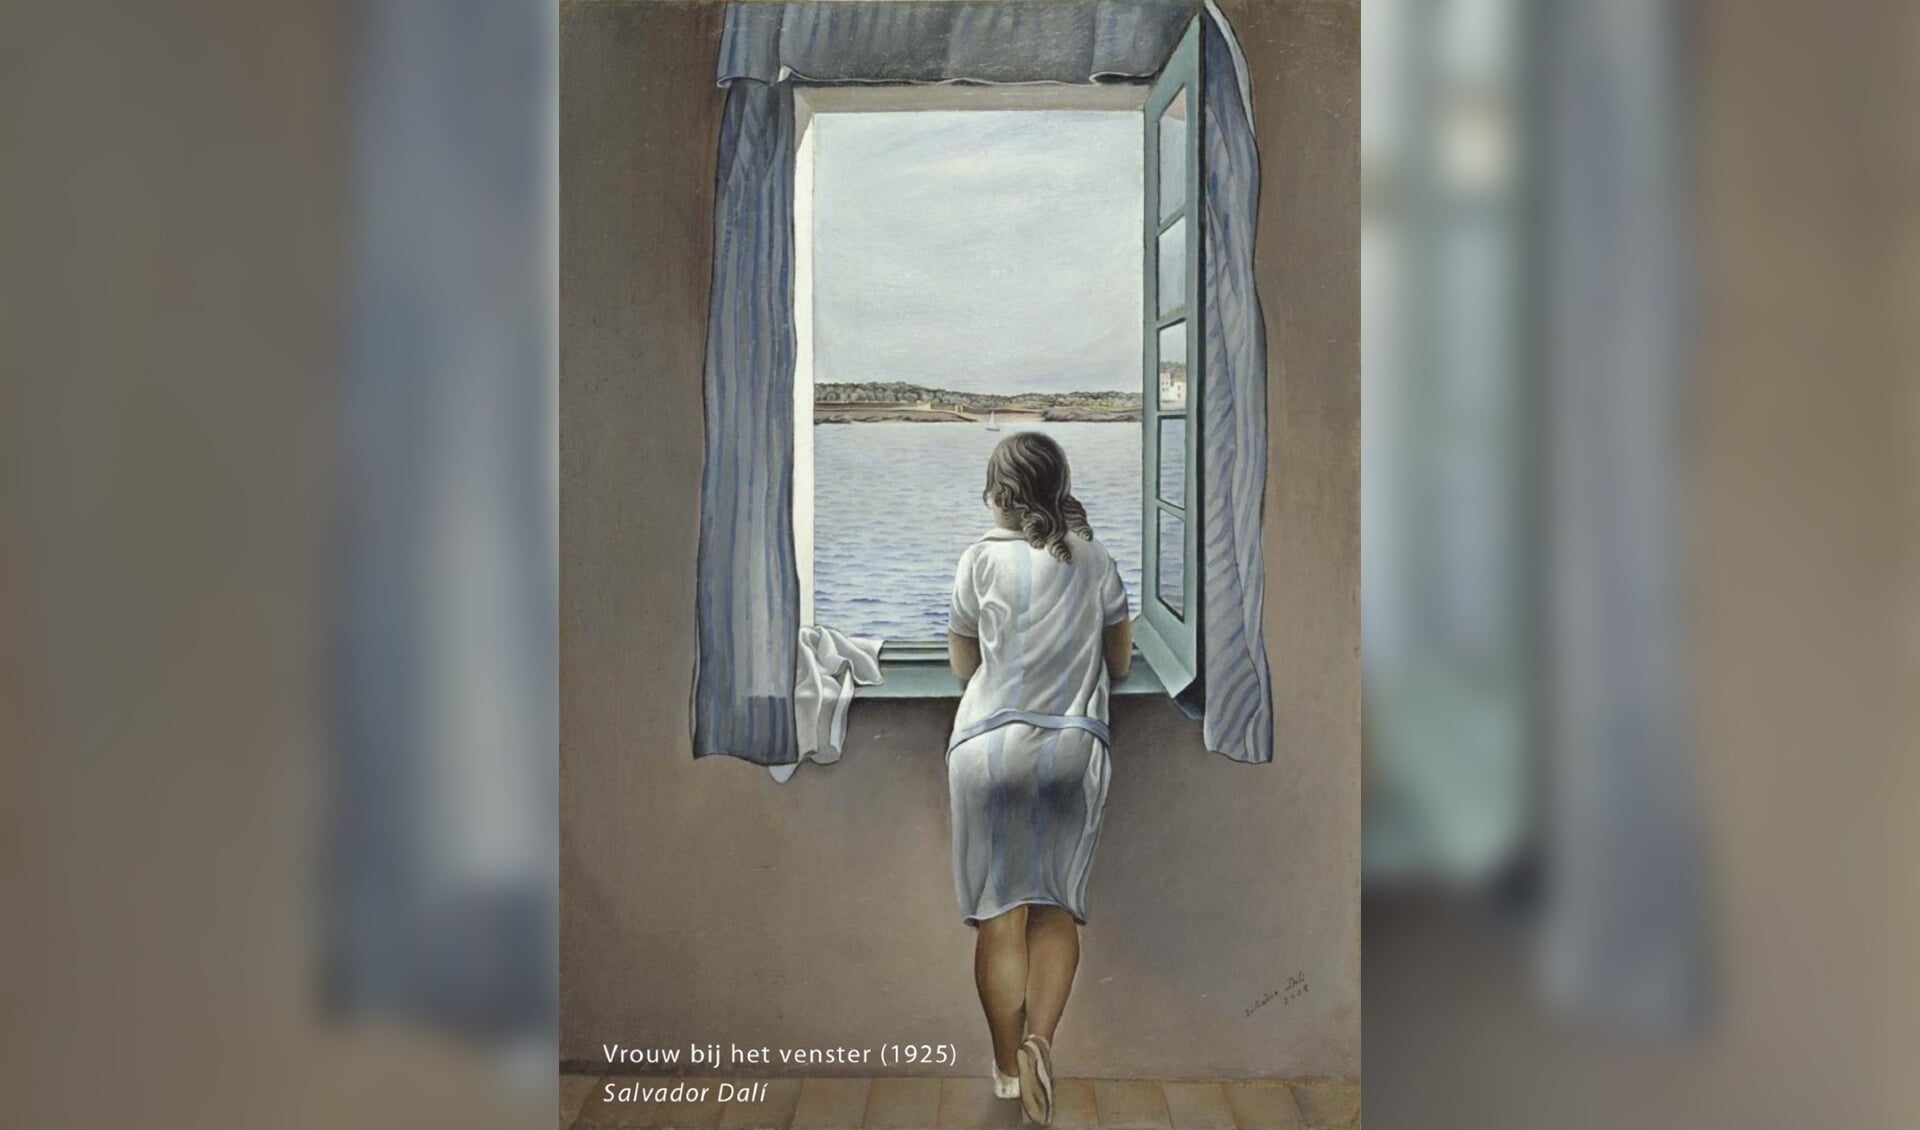 Vrouw bij het venster geschilderd door Ruth Jütte